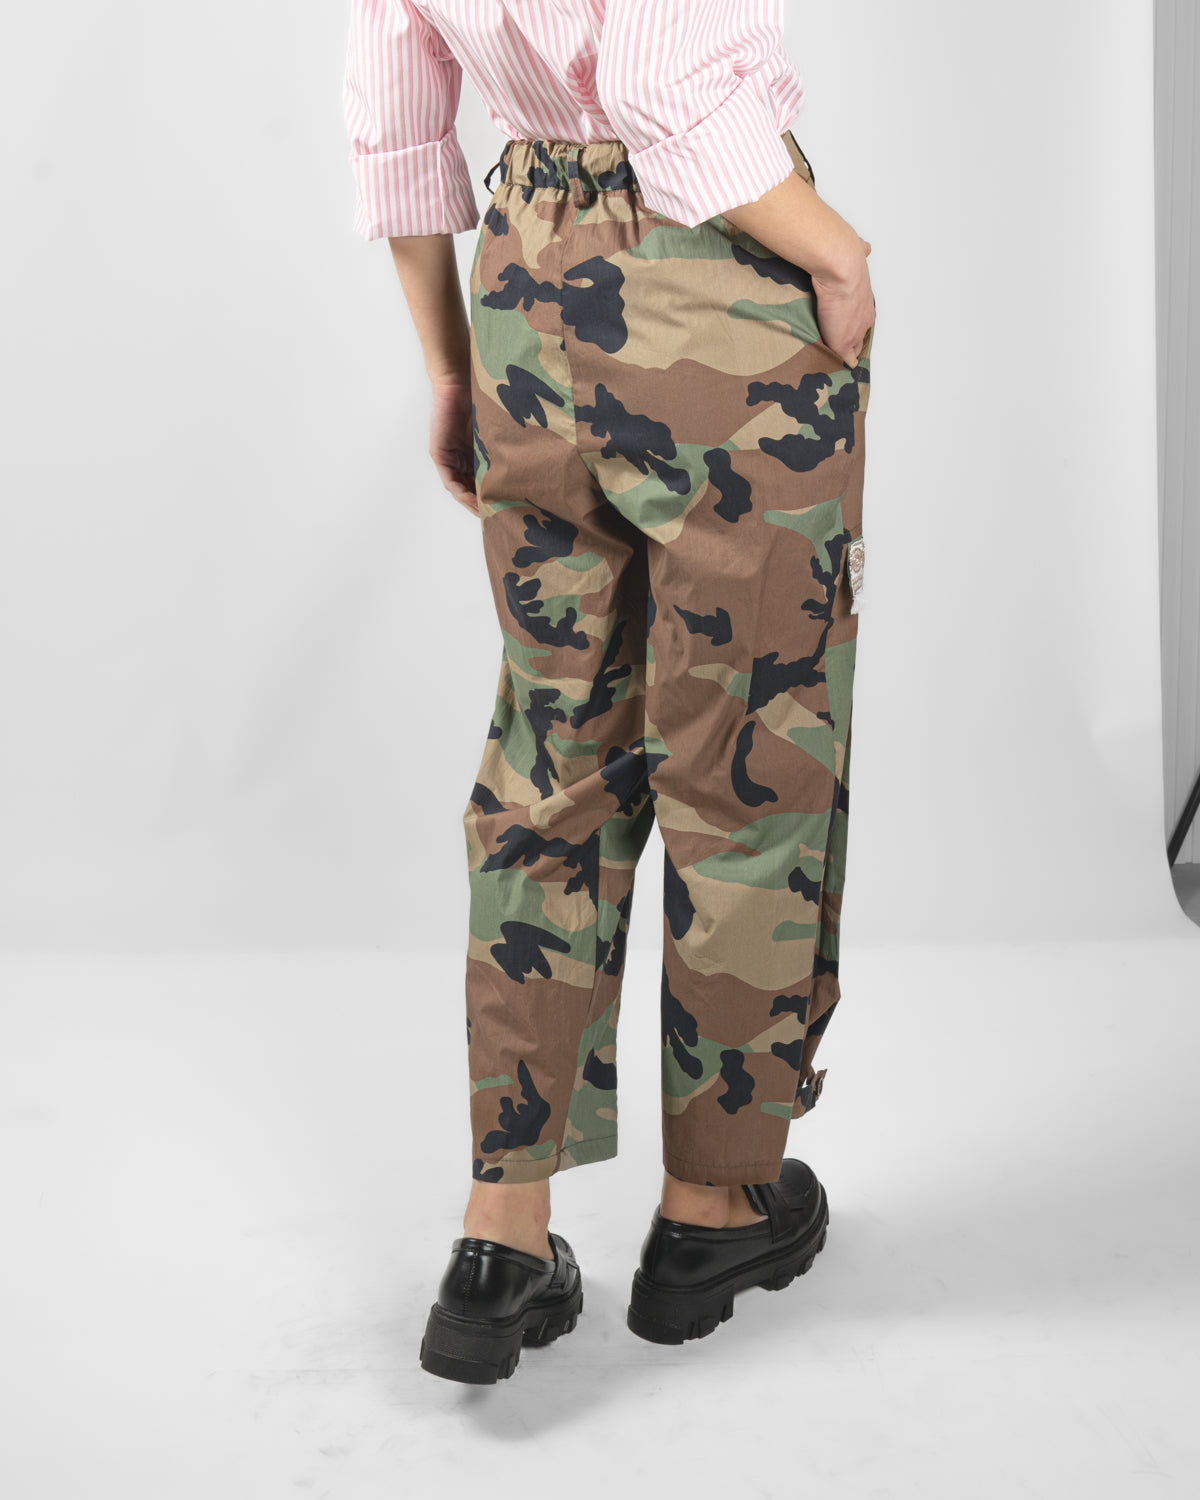 Pantalone cargo fantasia camouflage